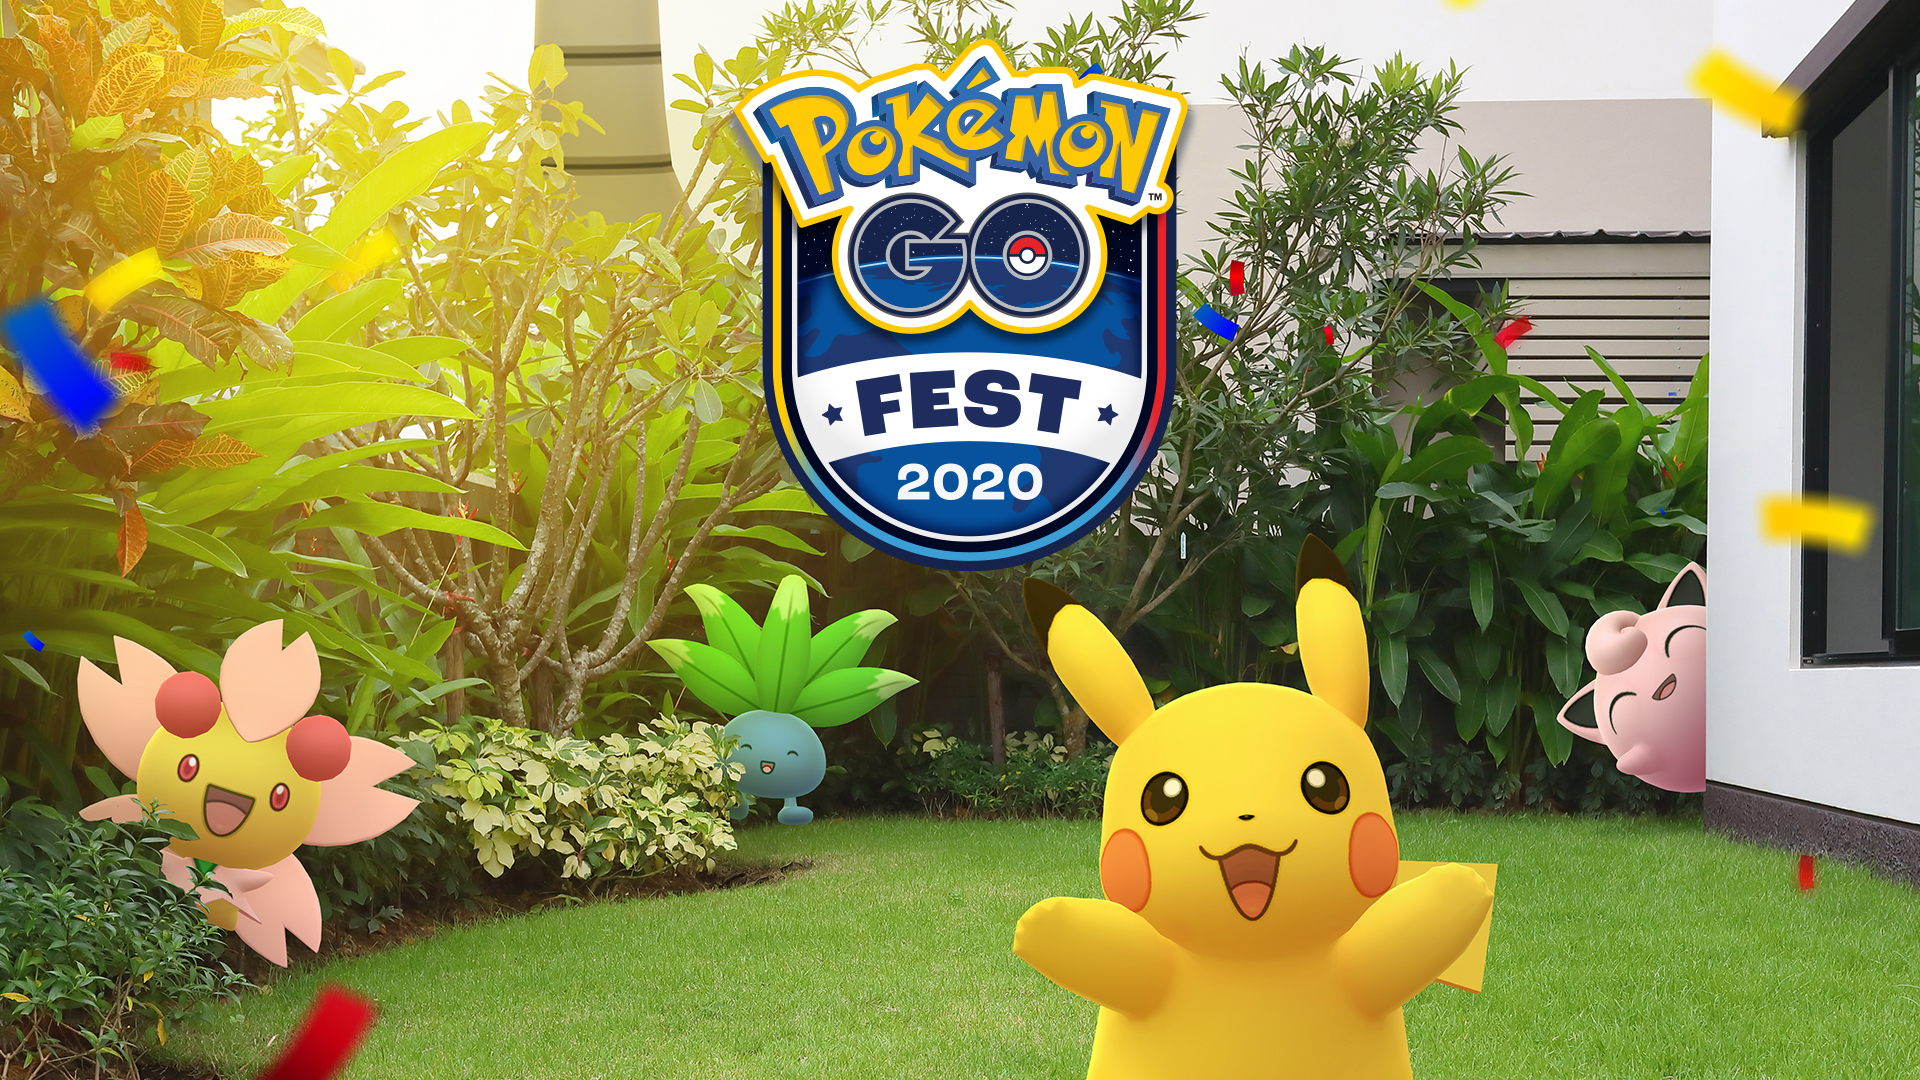 【ポケモンGO】「Pokémon GO Fest 2020」新情報まとめ! 希望者は全員参加可能! 出現ポケモンは地域でローテ